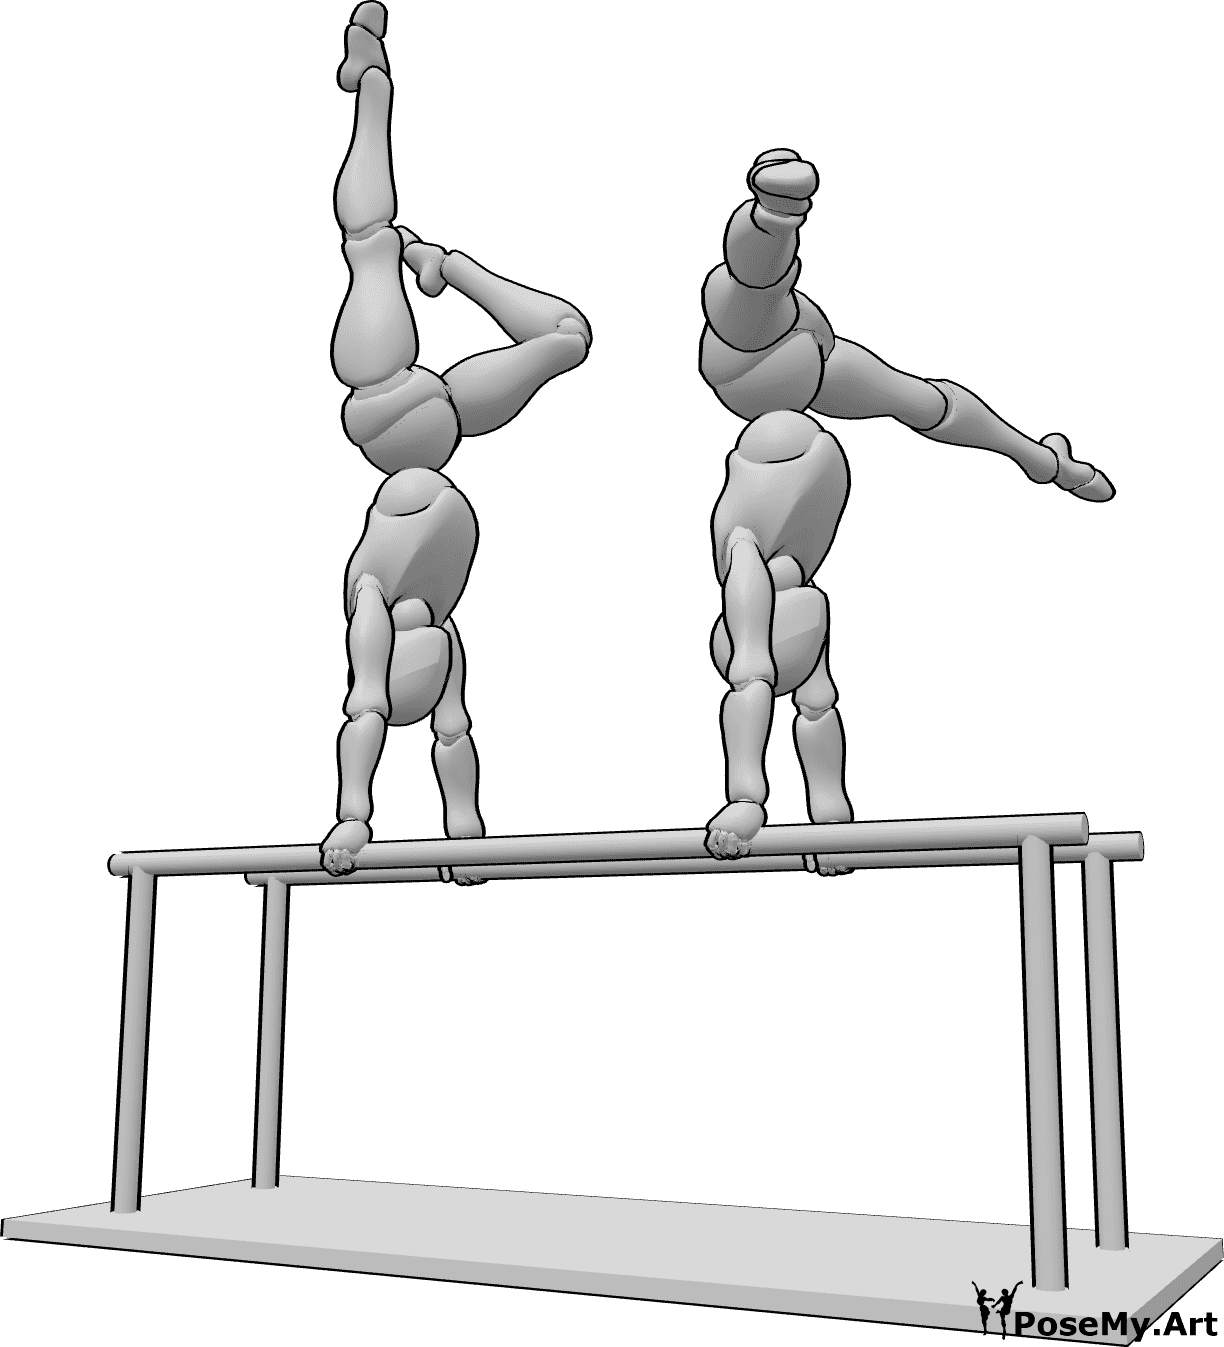 Riferimento alle pose- Due femmine in posa ginnica - Due donne fanno ginnastica alle parallele, con le mani e le gambe sollevate.